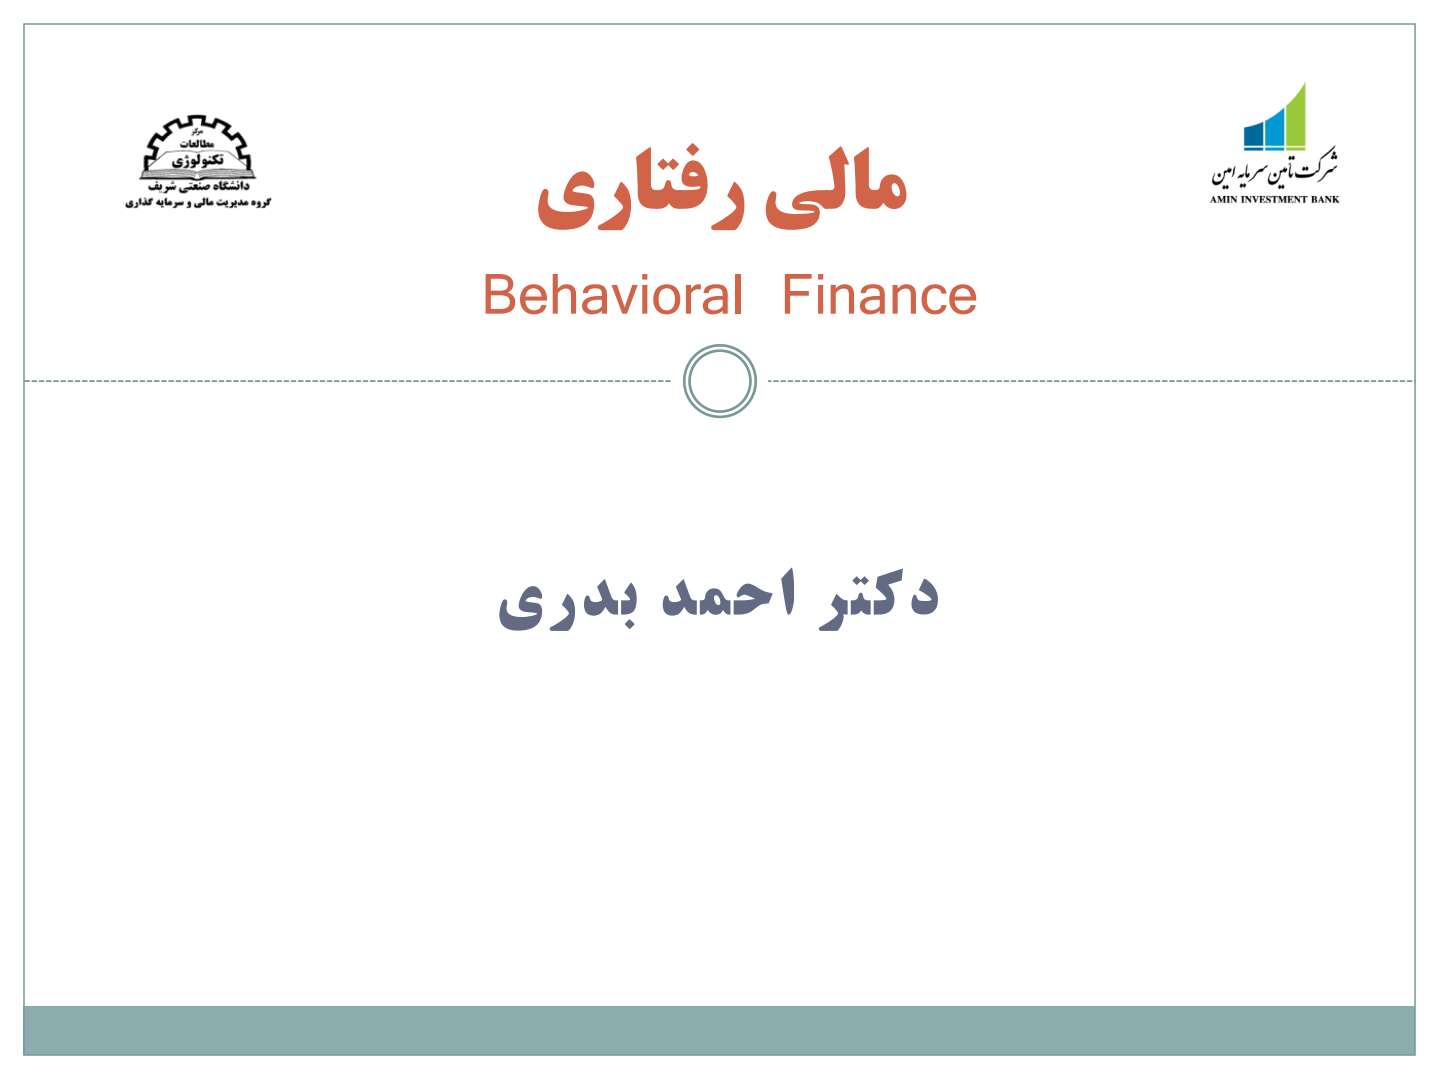 خلاصه کتاب مالی رفتاری دکتر احمد بدری